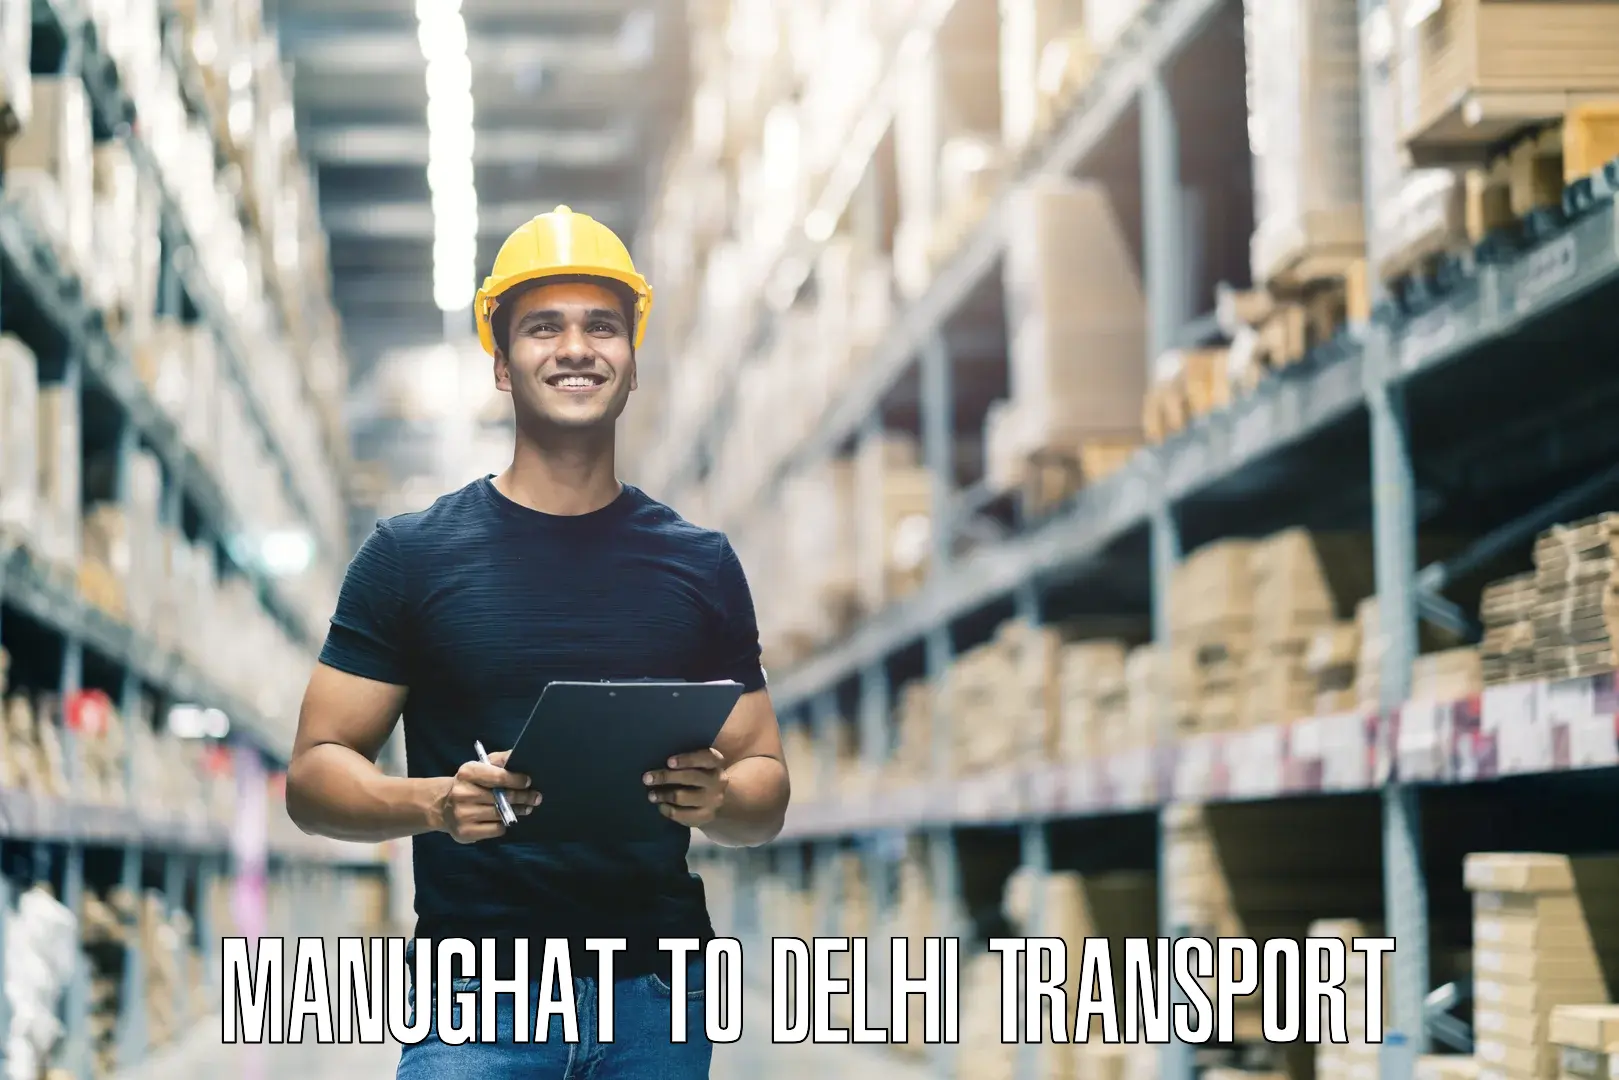 Online transport service Manughat to Delhi